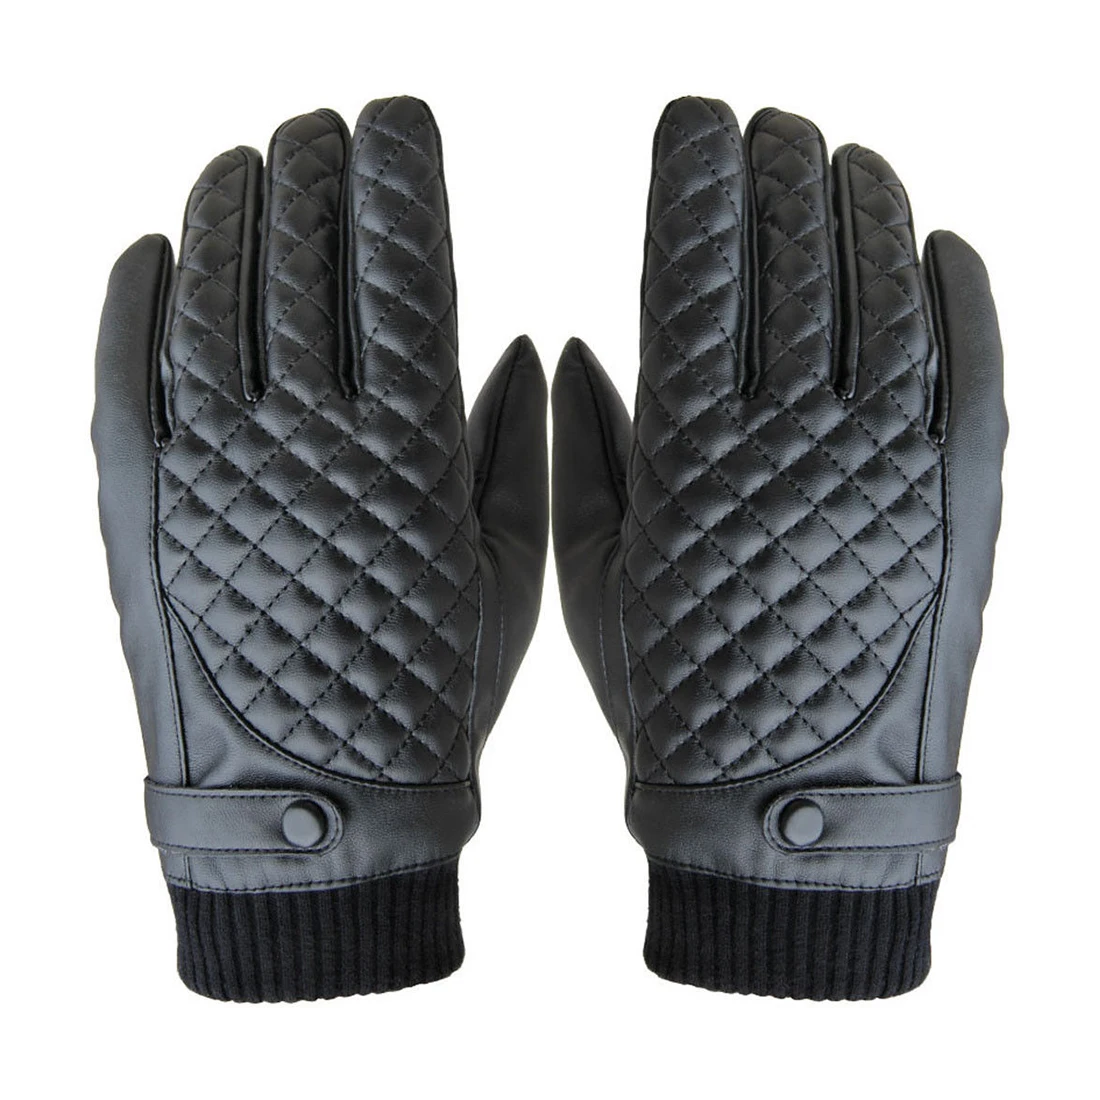 1 пара для мужчин зимние термальность непромокаемые велосипед велосипедный спорт Велоспорт сенсорный экран спортивные перчатки, черны